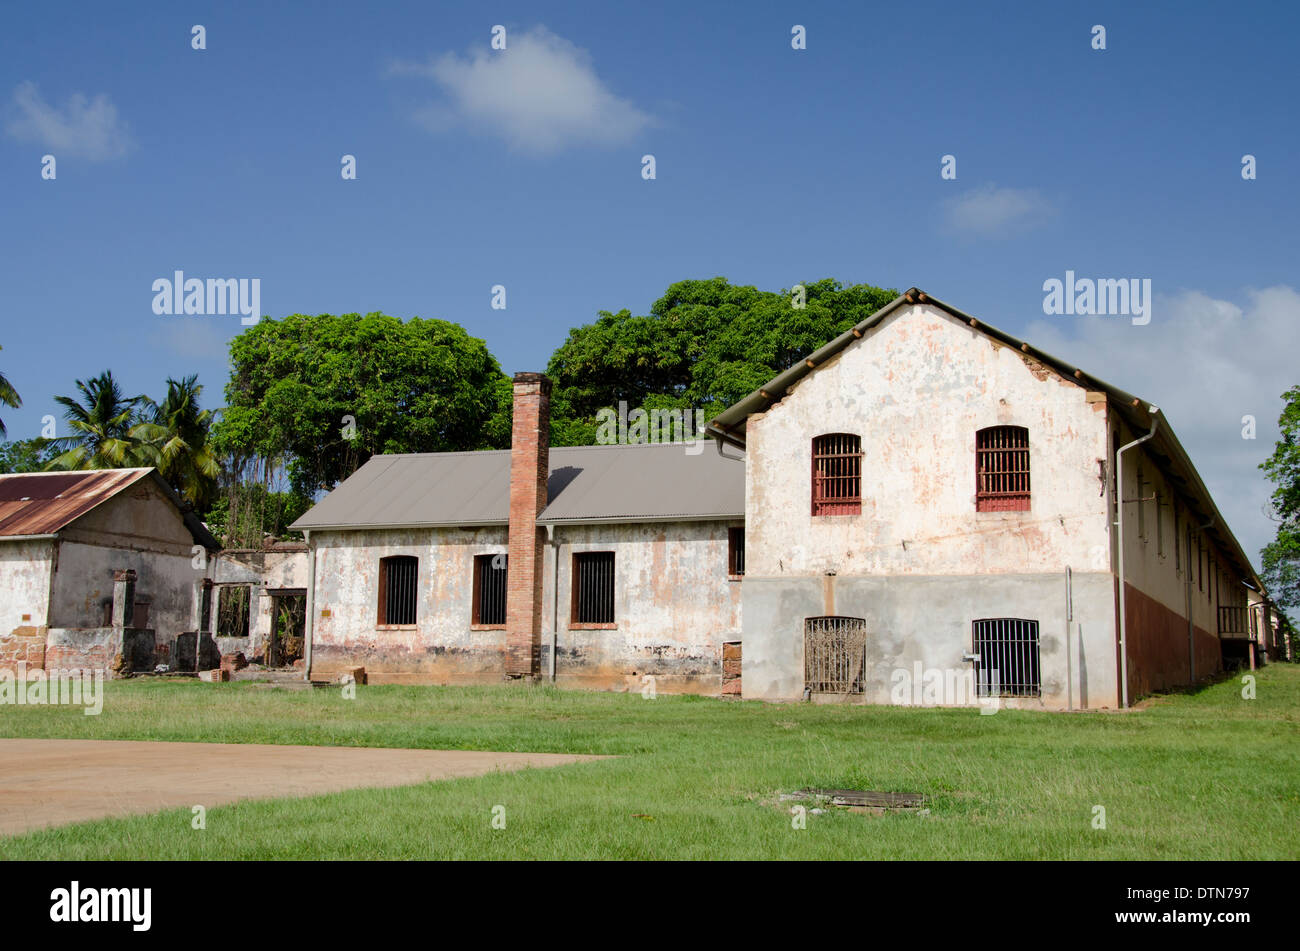 Guiana francese, salvezza isole. Ile Royale, vecchi edifici abbandonati una volta parte della famigerata colonia penale. Foto Stock